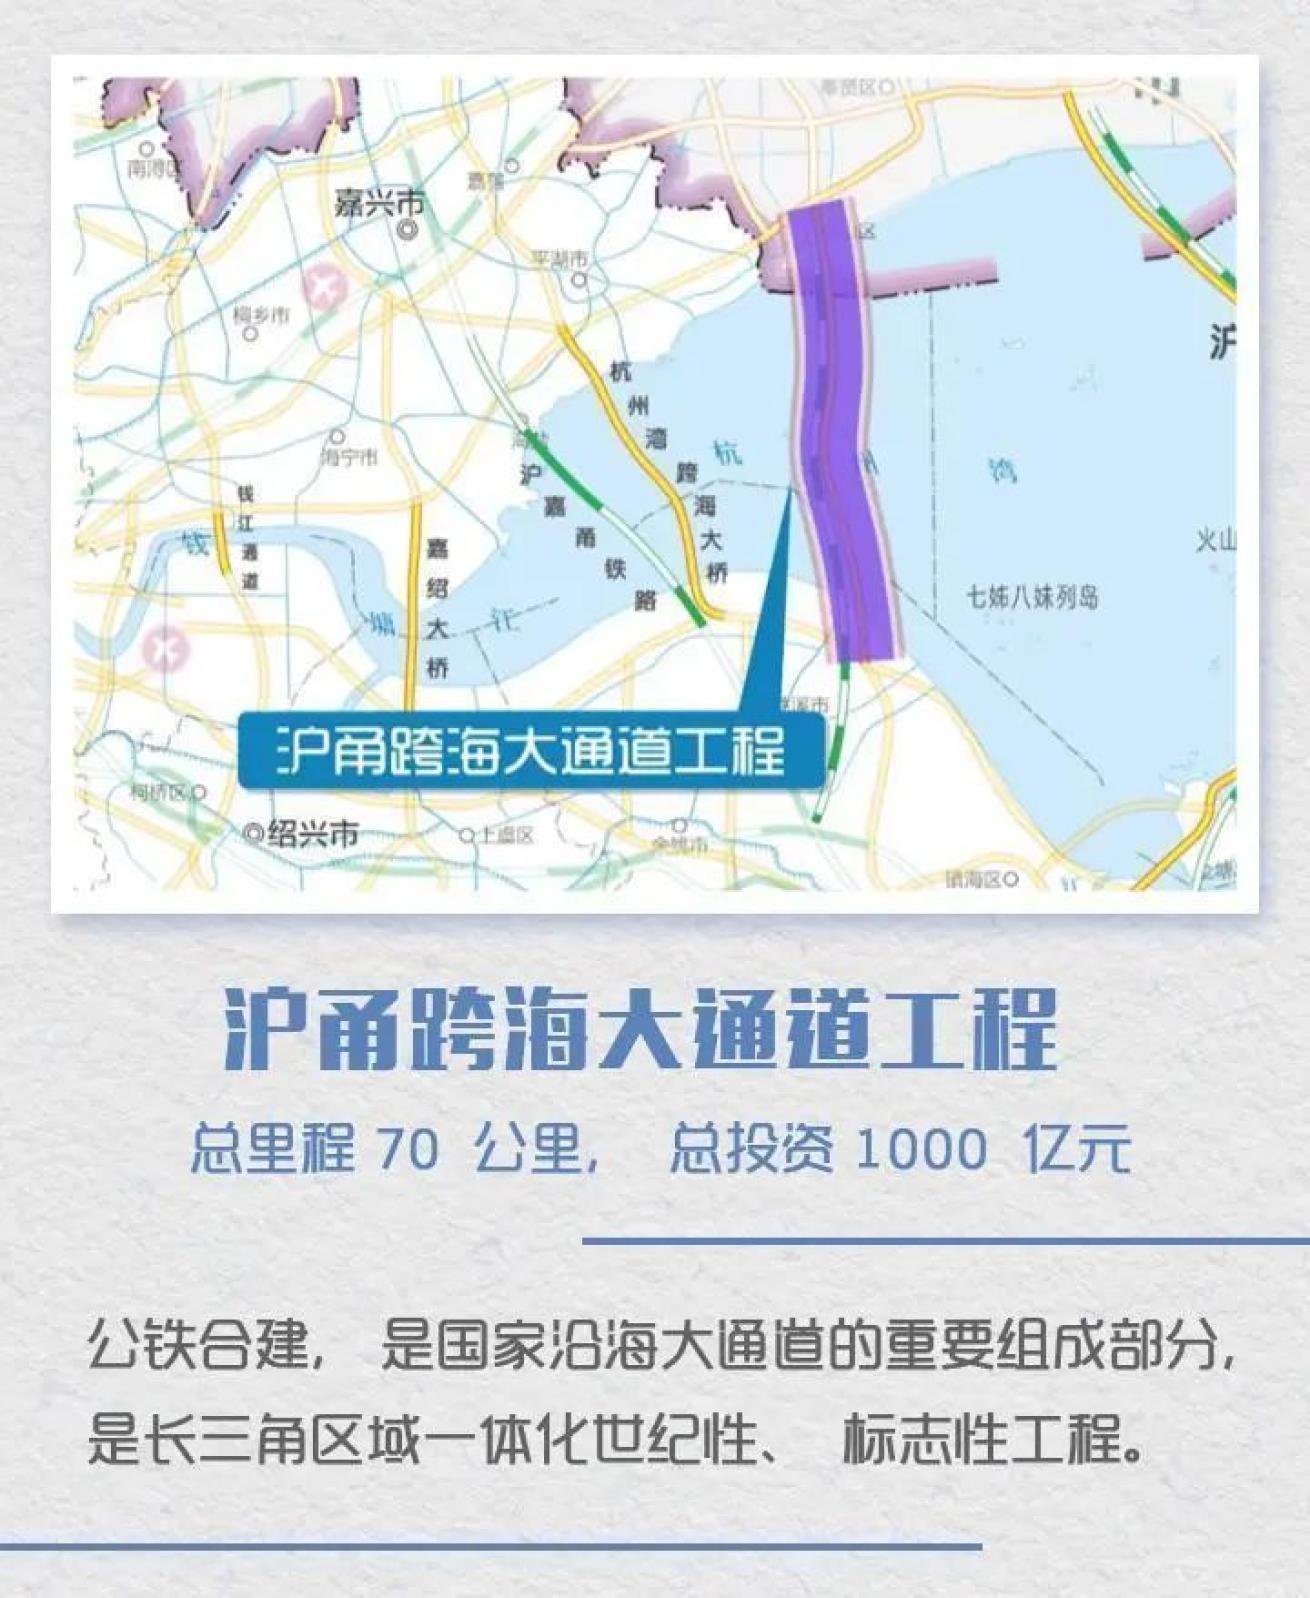 沪甬跨海铁路首次上图未来宁波到上海半小时直达